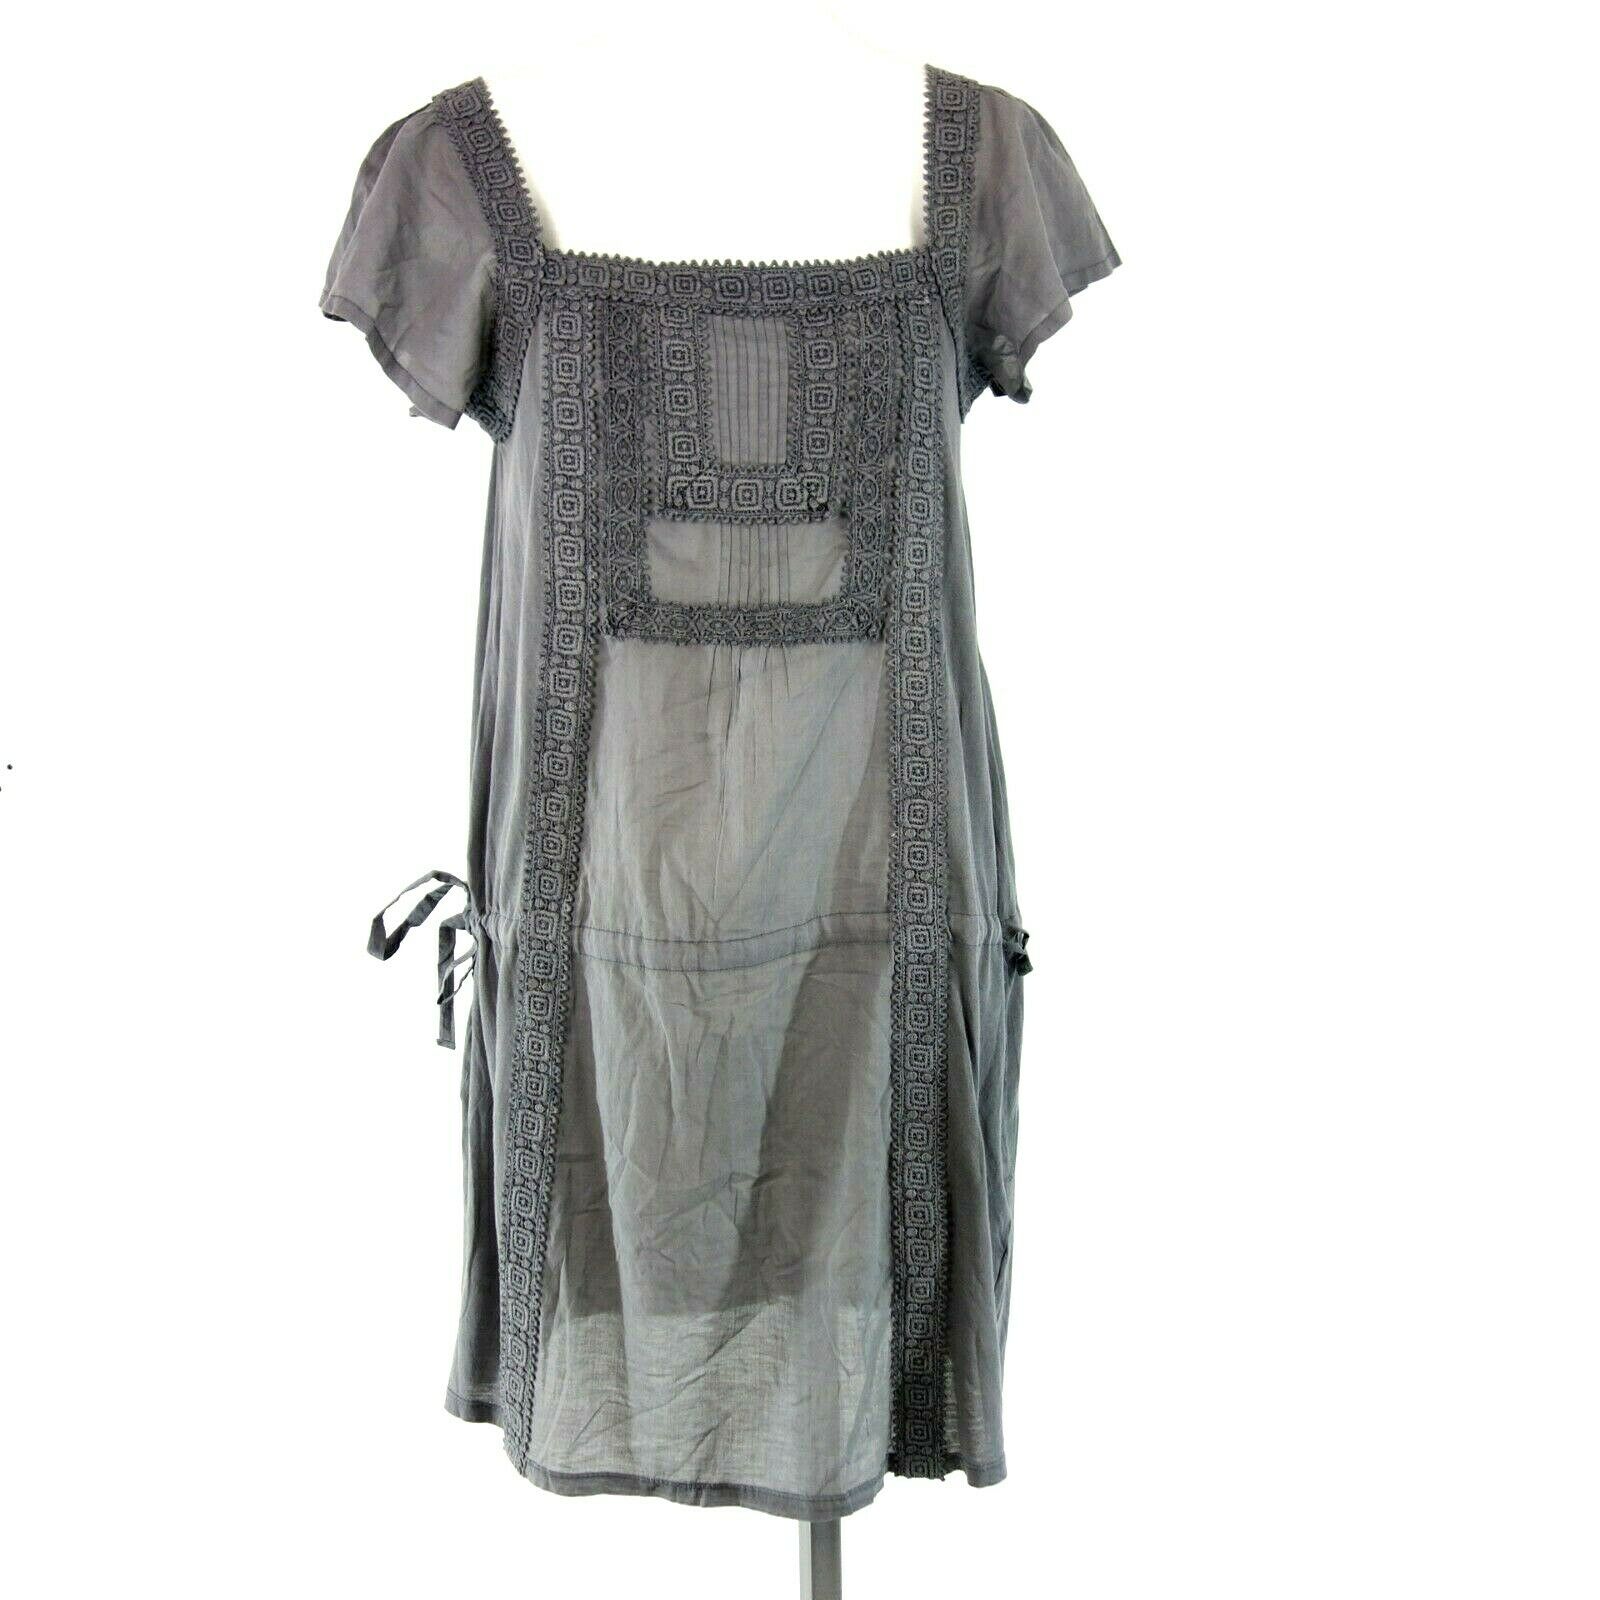 Essentials by Set Damen Kleid Tunikakleid Größe M 38 Baumwolle Grau Np 129 Neu